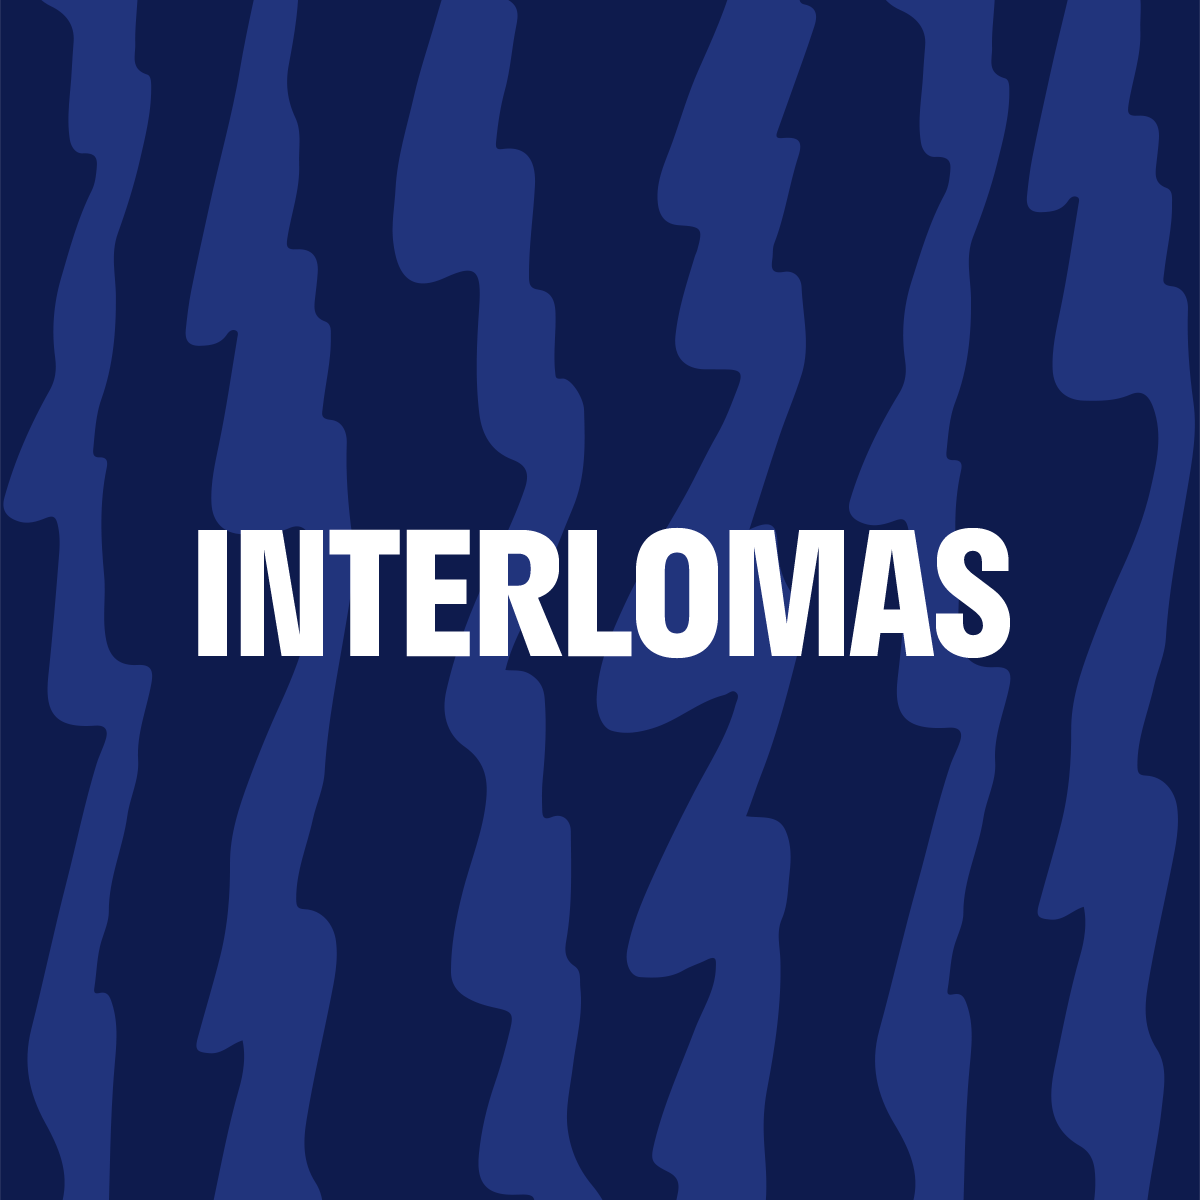 Interlomas - Vapea Mx - vapea.mx